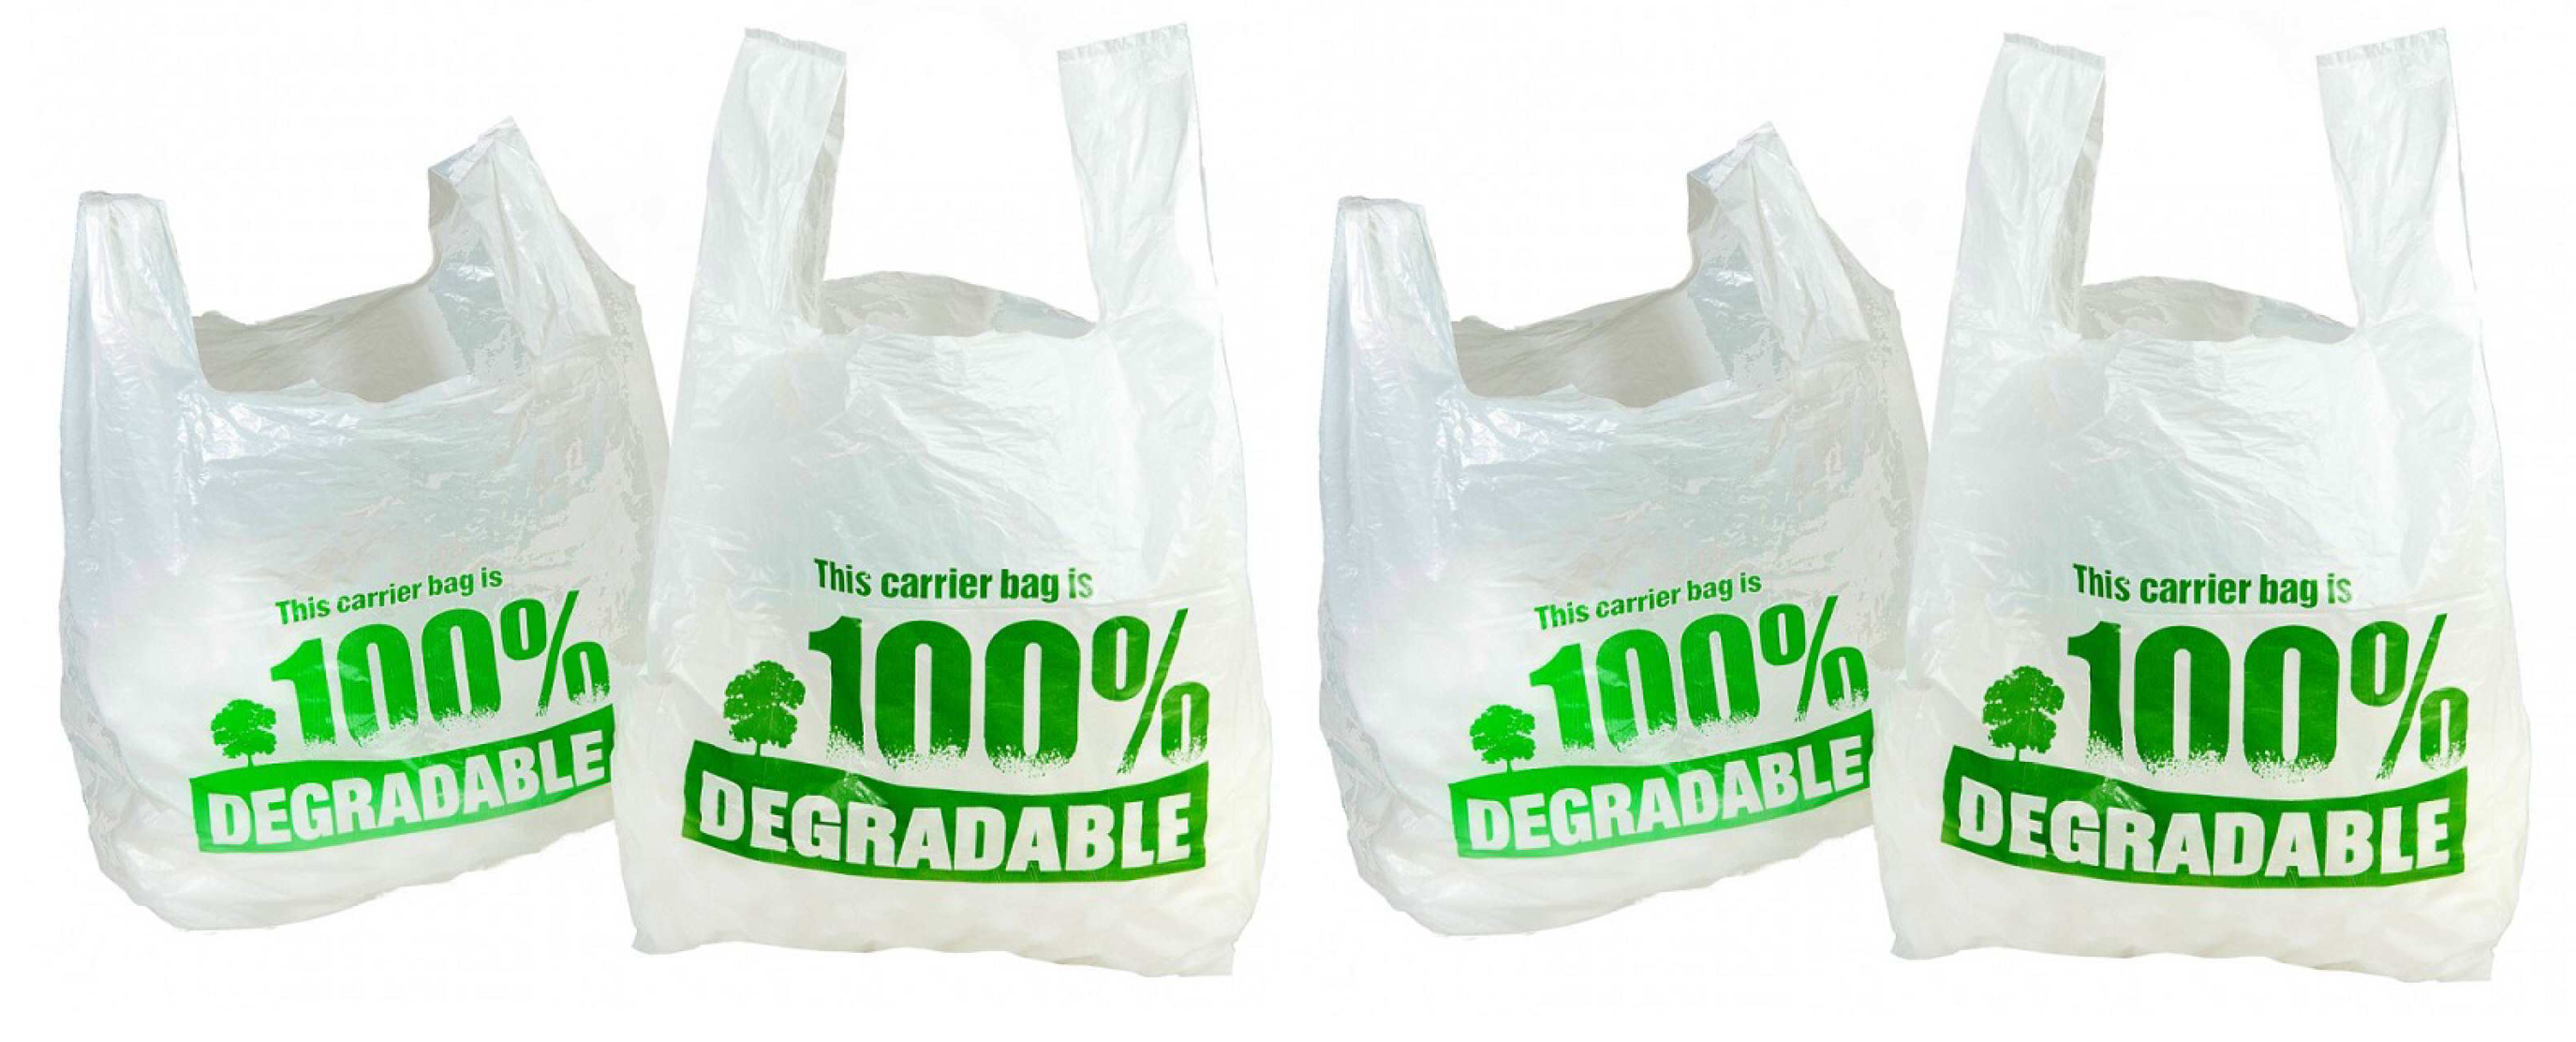 Sacchetti biodegradabili a pagamento solo in Italia 0.02€